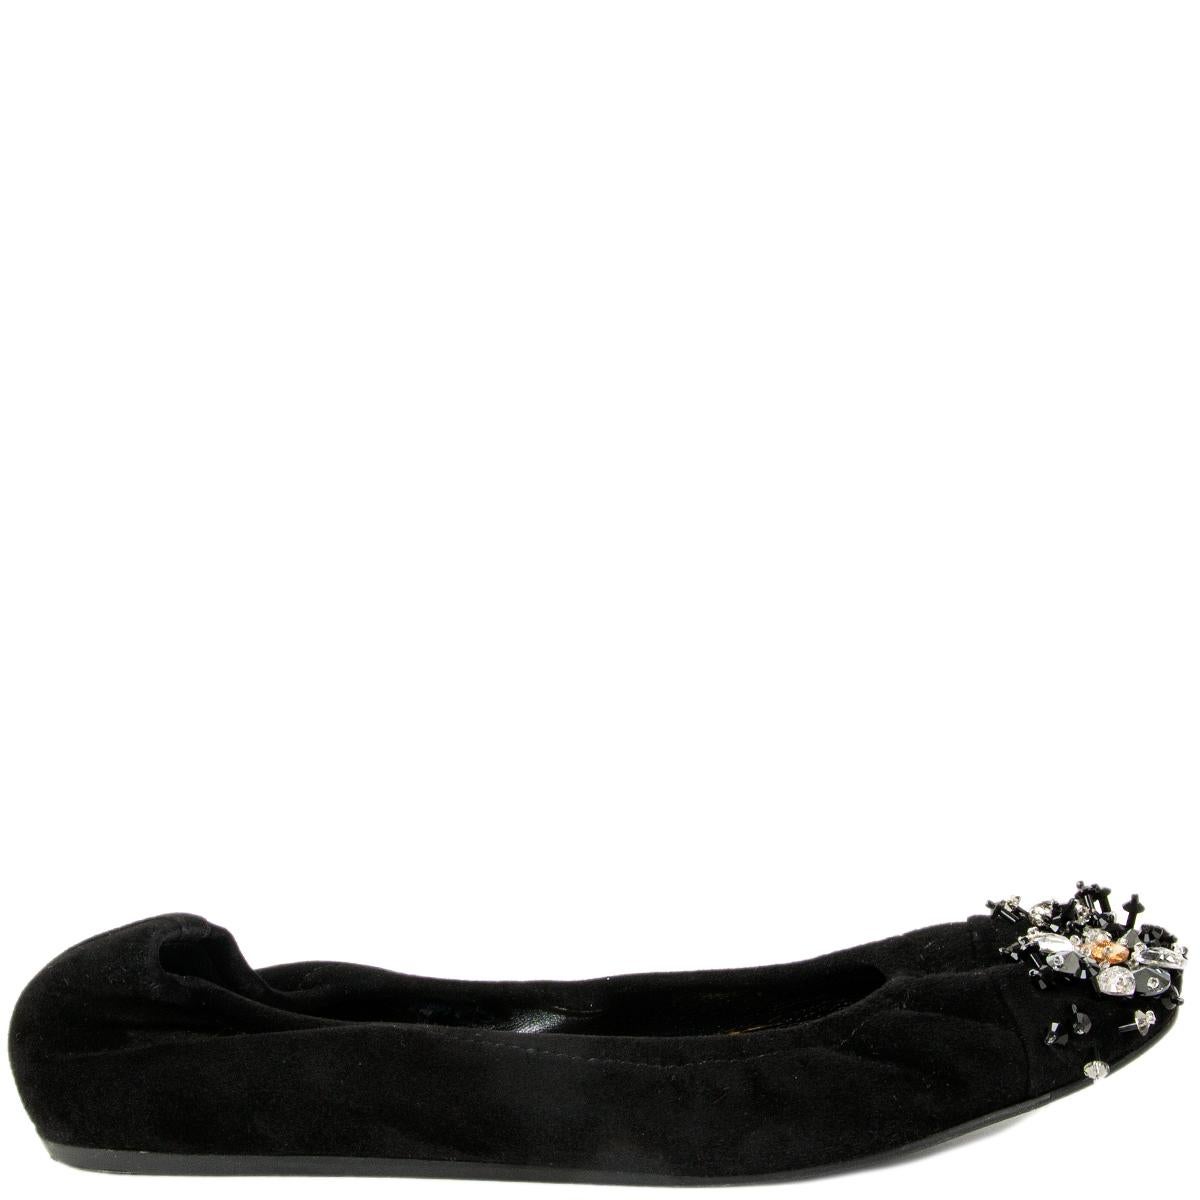 LANVIN black suede CRYSTAL EMBELLISHED Ballet Flats Shoes 37 For Sale